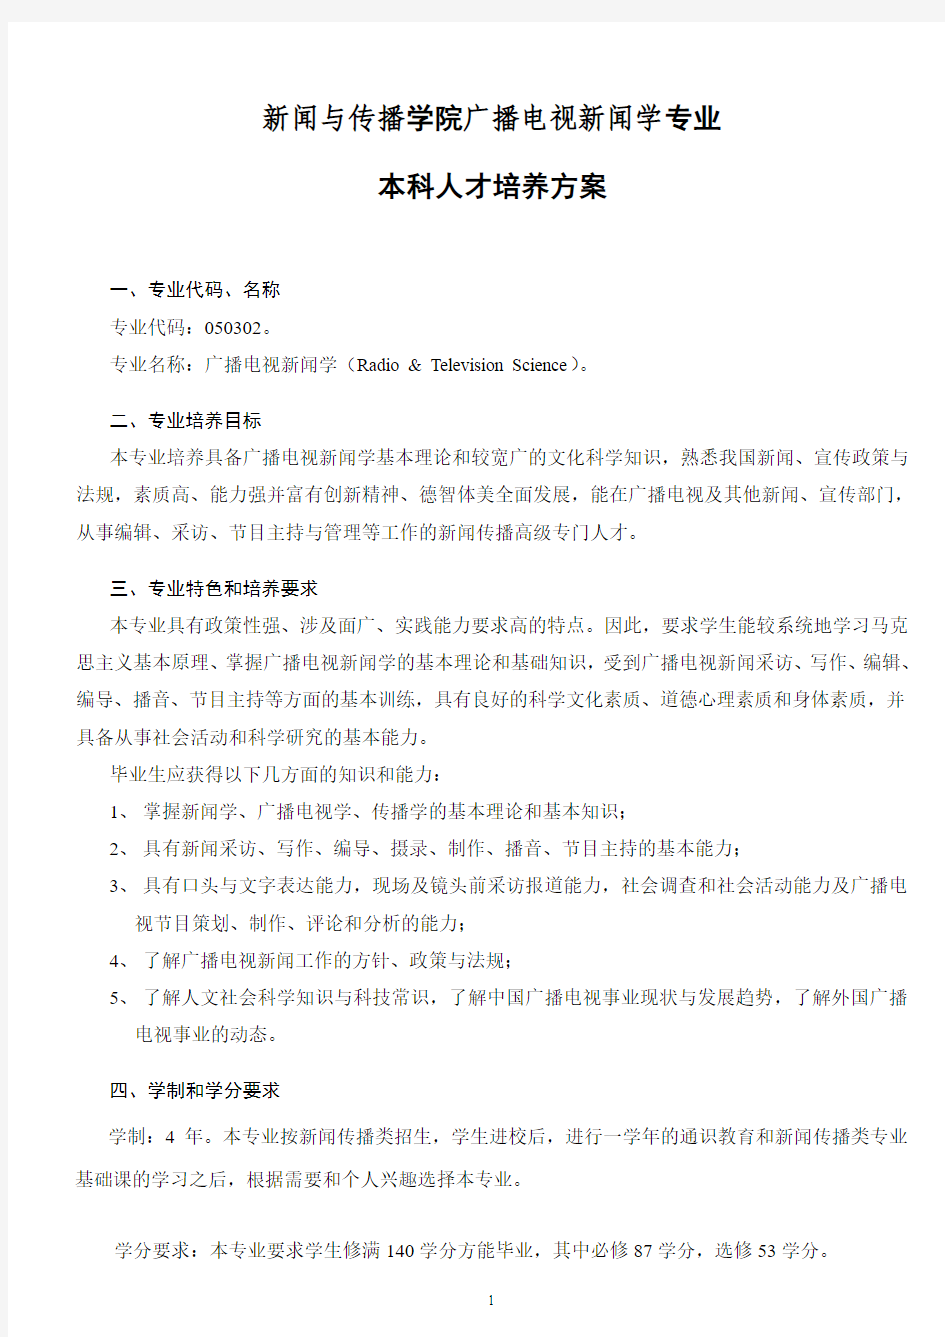 武汉大学培养方案 广播电视新闻学专业(刘建明)